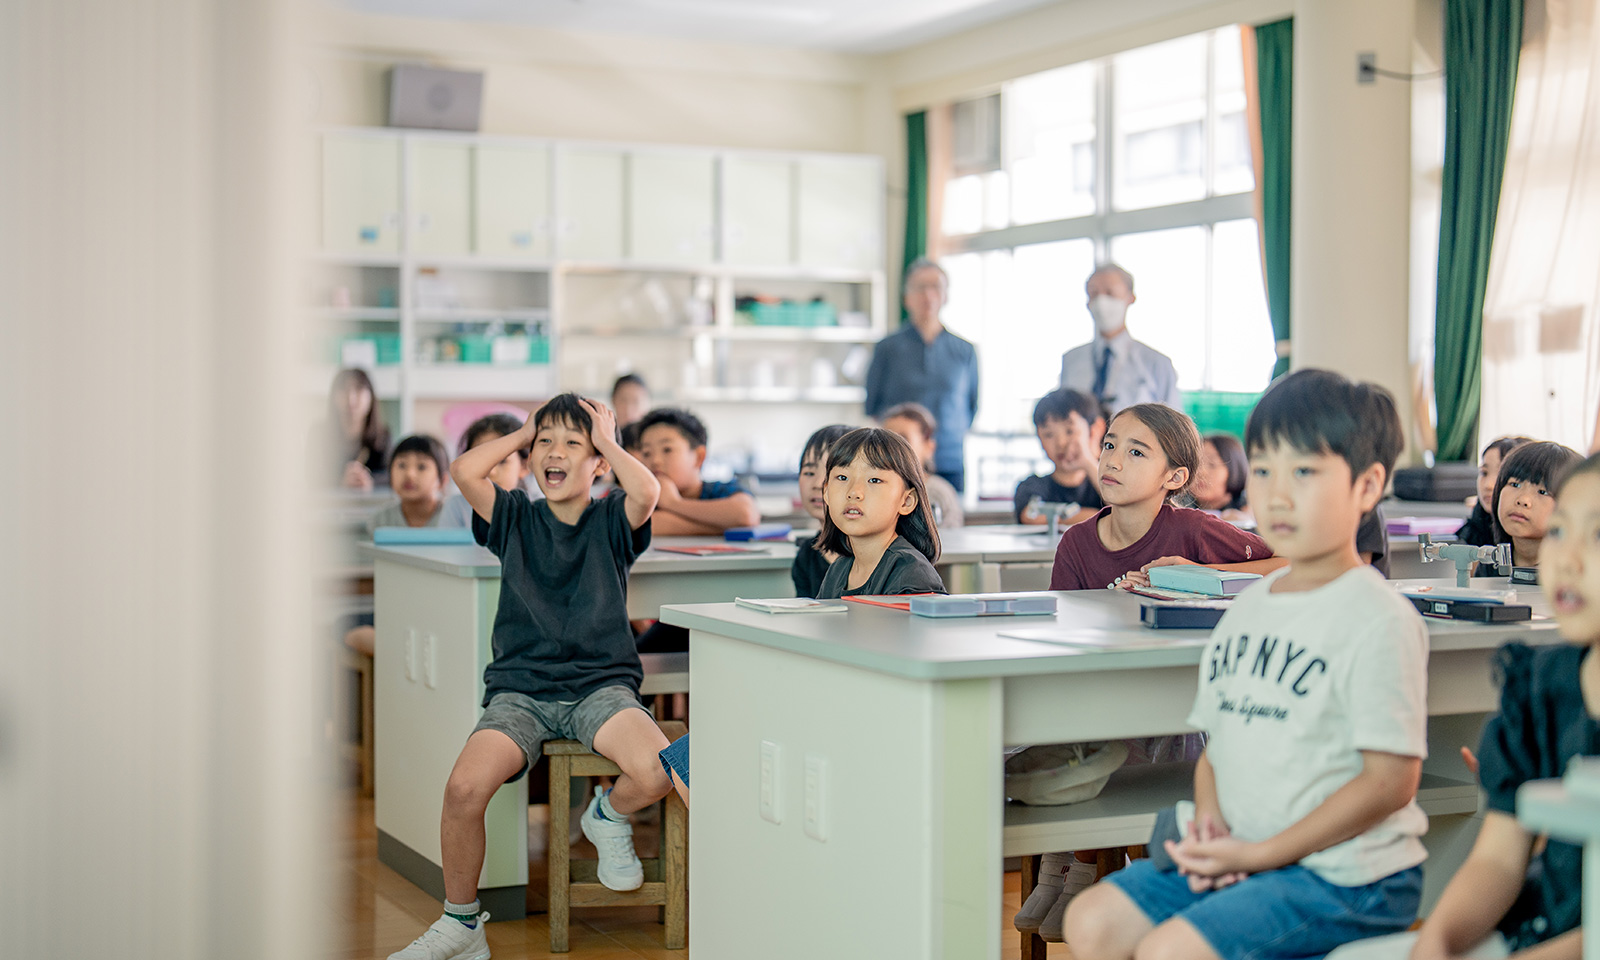 青山小学校の理科室に集まった子供たち。環境問題について真剣に学ぶ様子